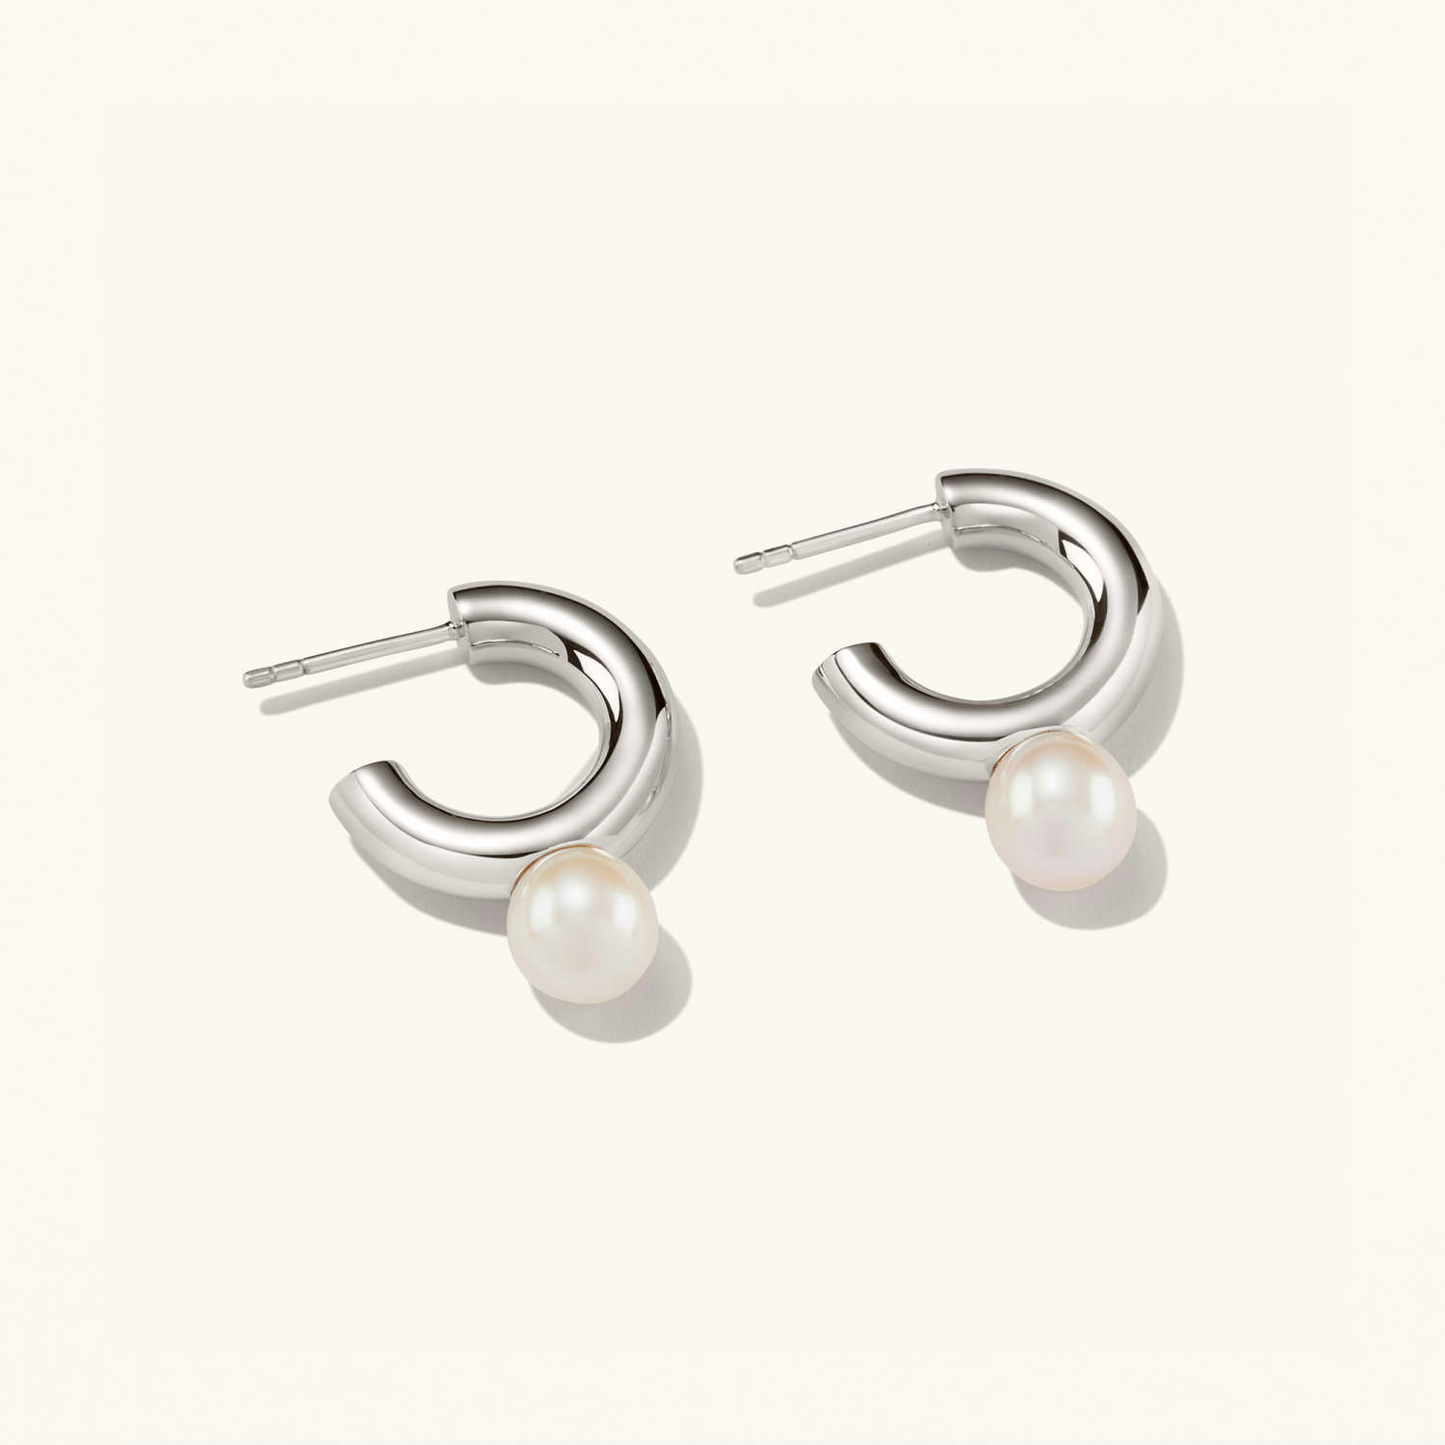 Dual Pearl 925 Sterling Silver Hoops Stud Earrings